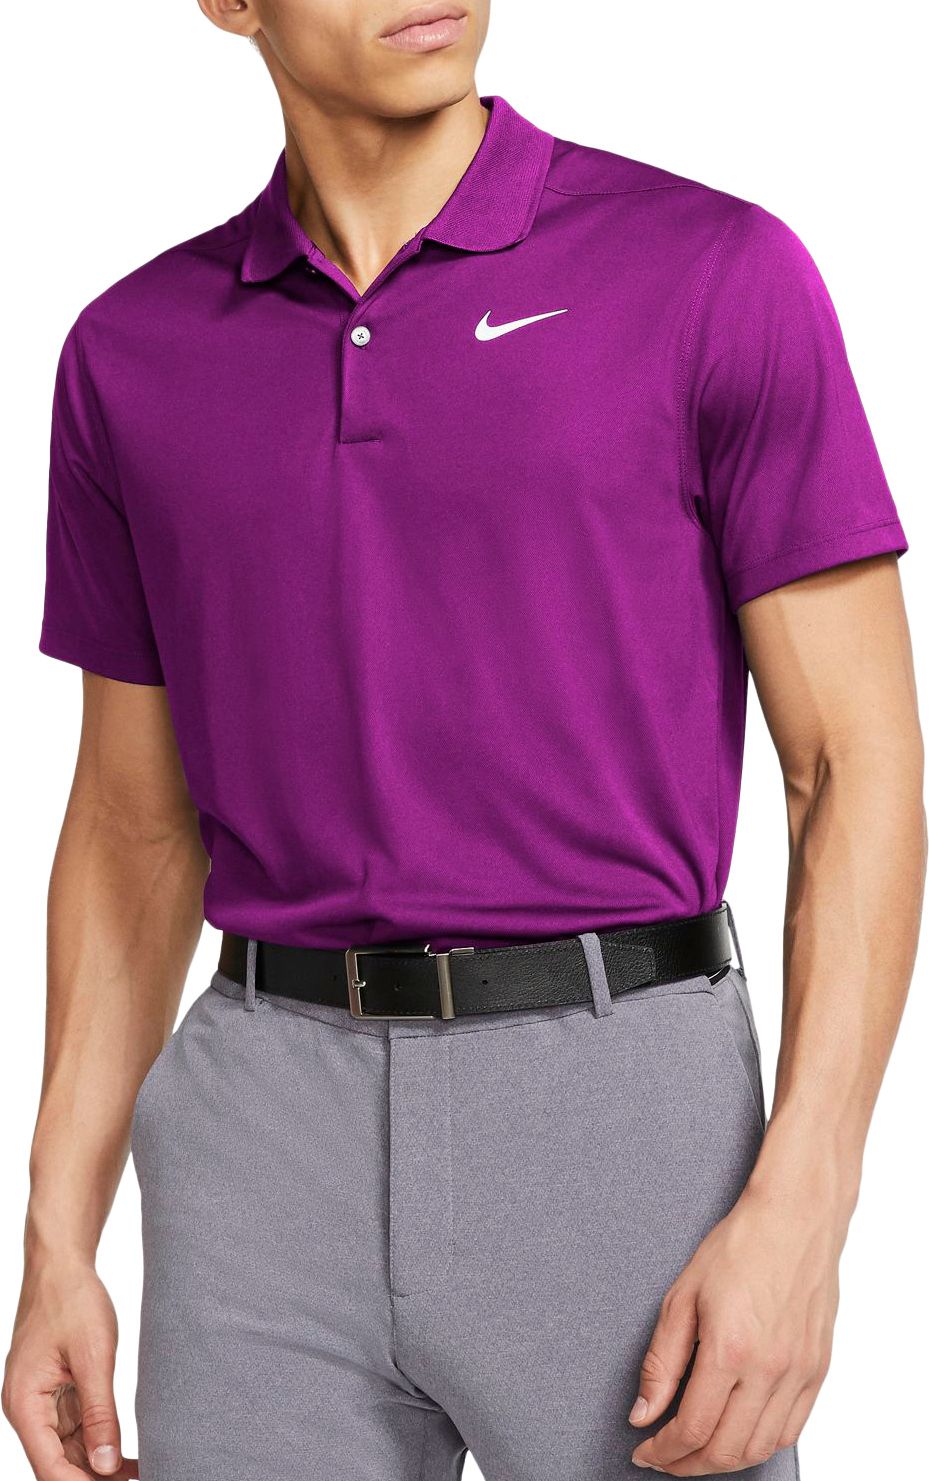 nike lavender golf shirt